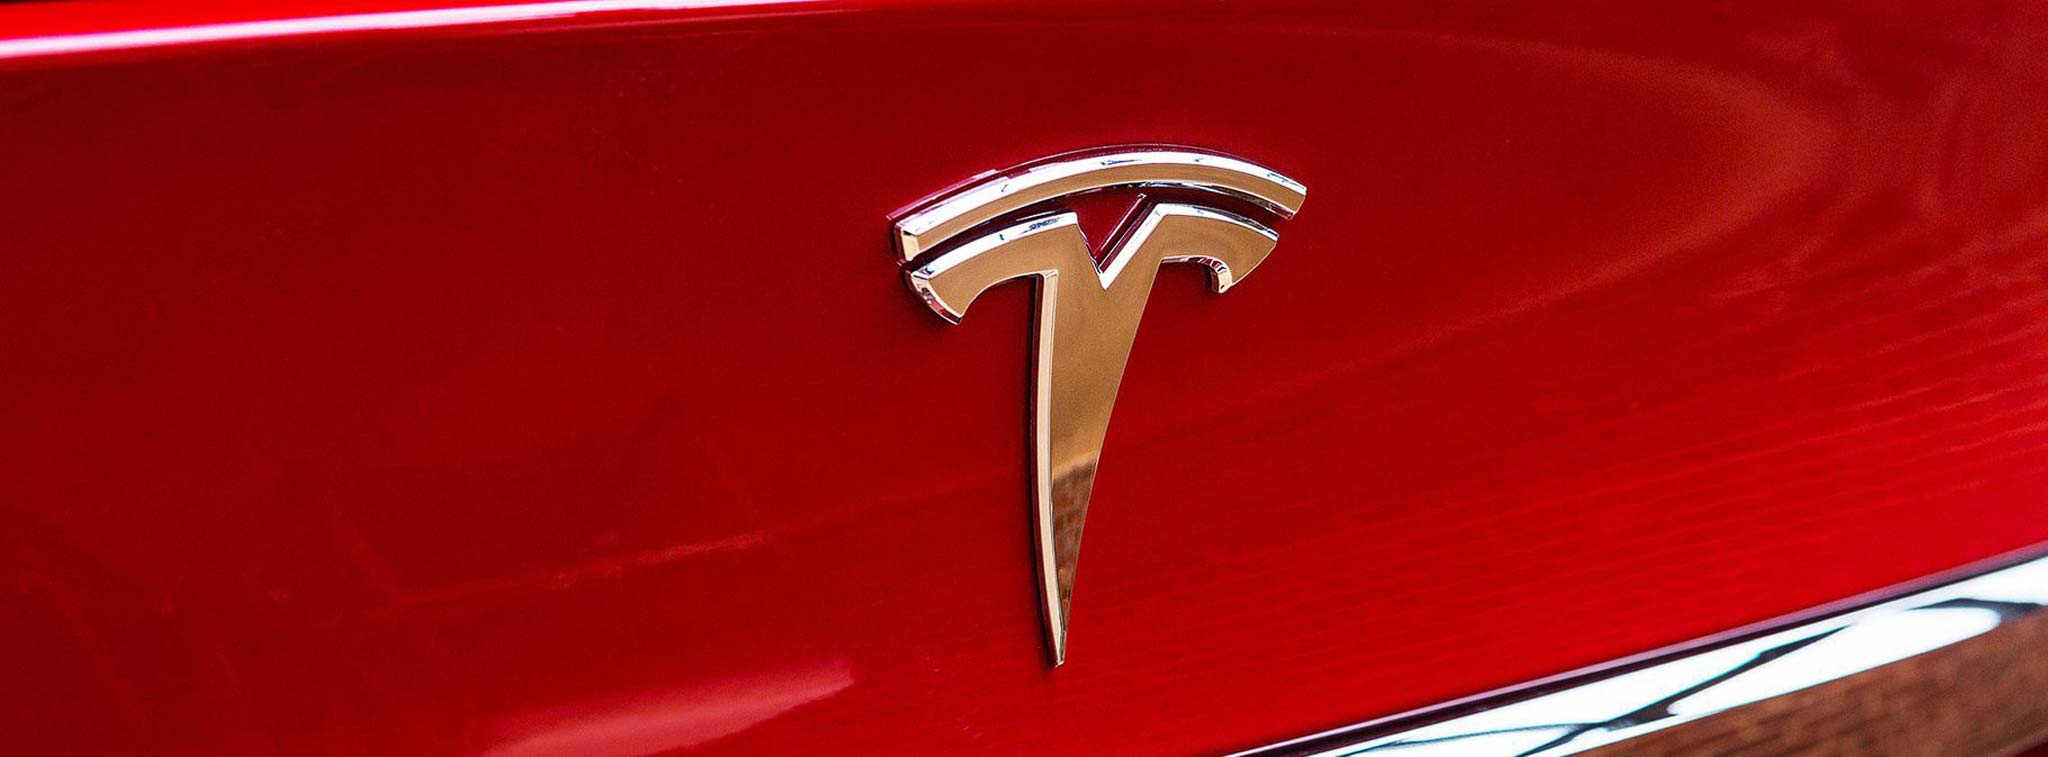 Tesla đã đạt được thỏa thuận xây dựng nhà máy ở Thượng Hải